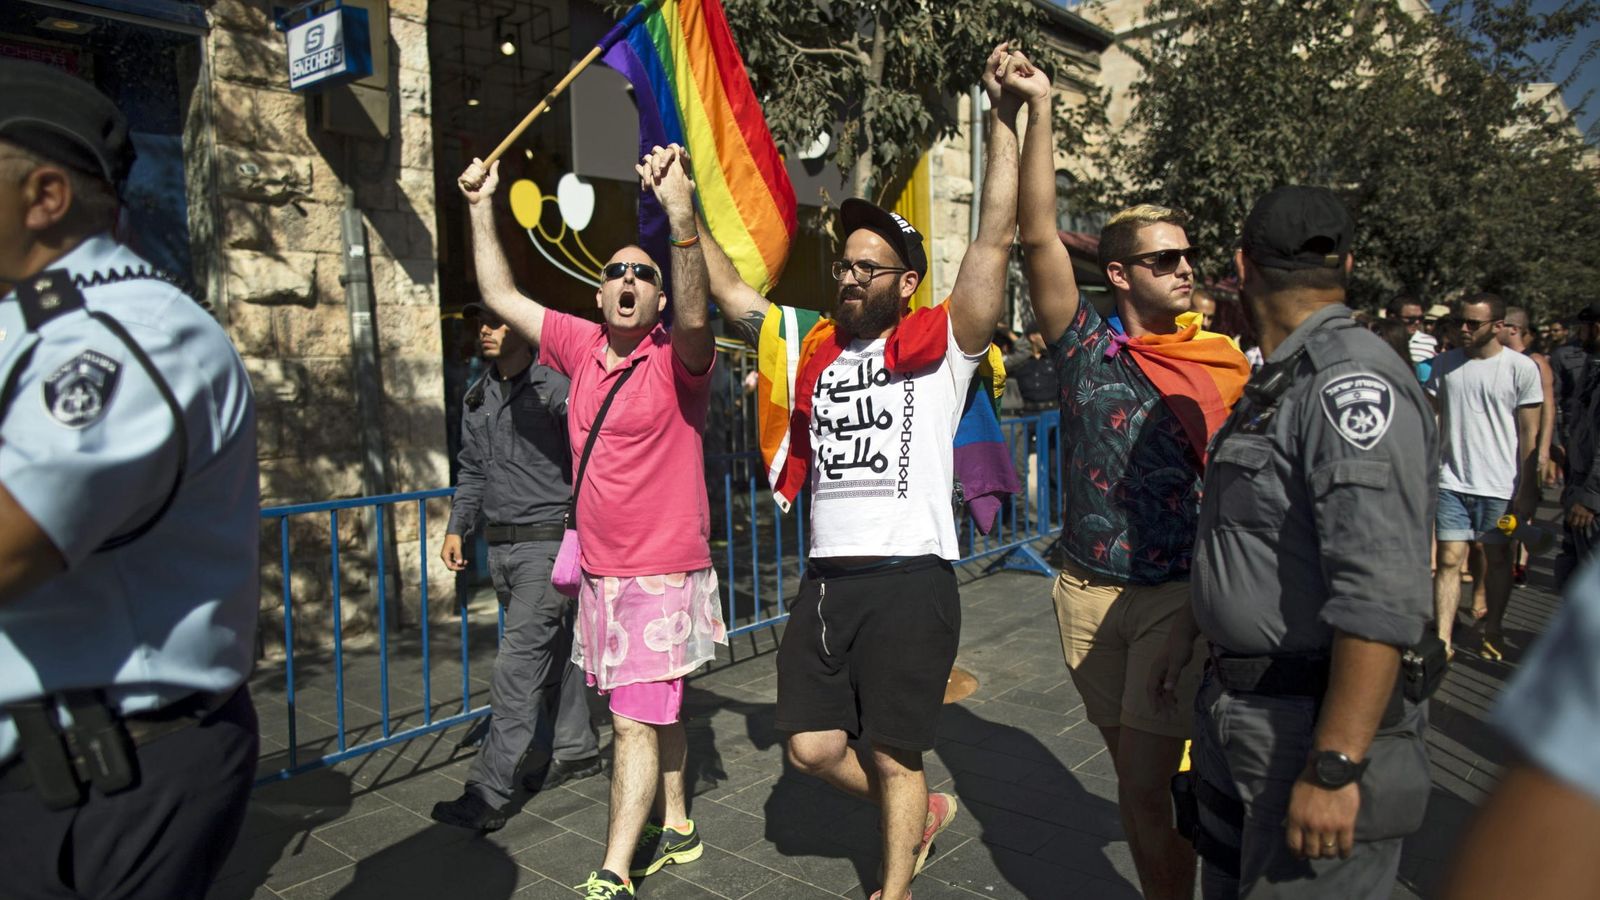 Foto: Varios miembros de la comunidad de lesbianas, gais, bisexuales y transexuales (LGBT) se manifiestan contra la homofobia. (Efe)